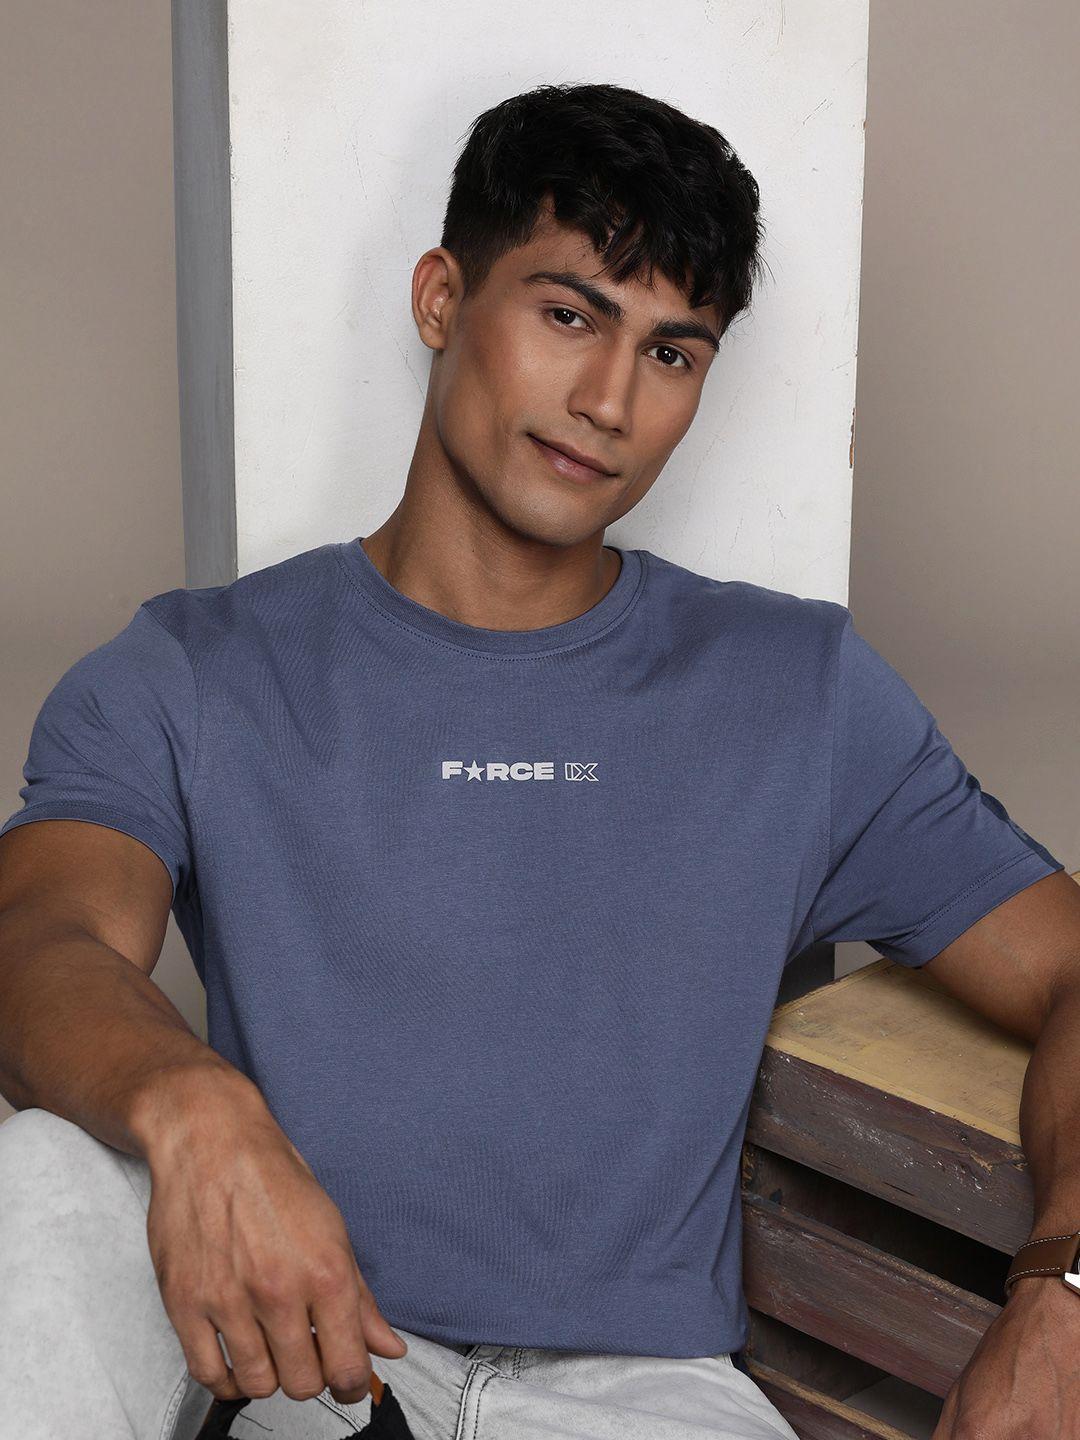 force ix men pure cotton brand logo printed applique t-shirt